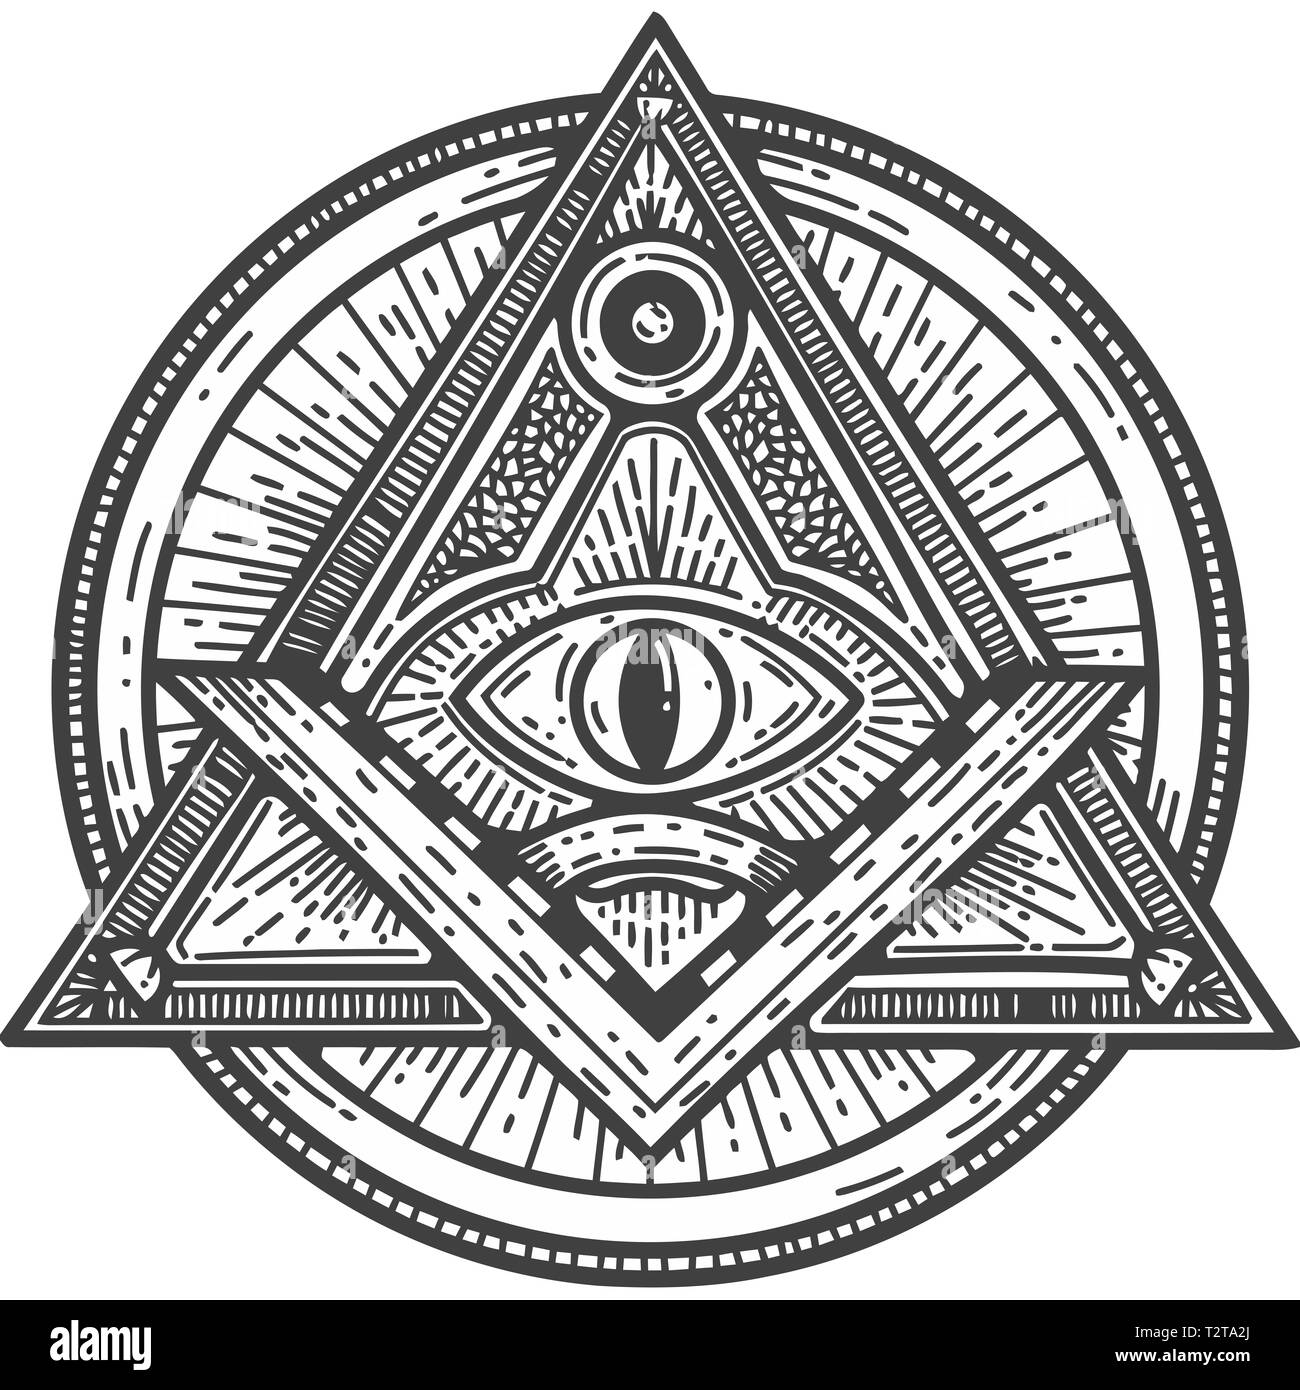 Quare et occultisme maçonnique compas noir blanc eye of providence illuminati illustration Banque D'Images